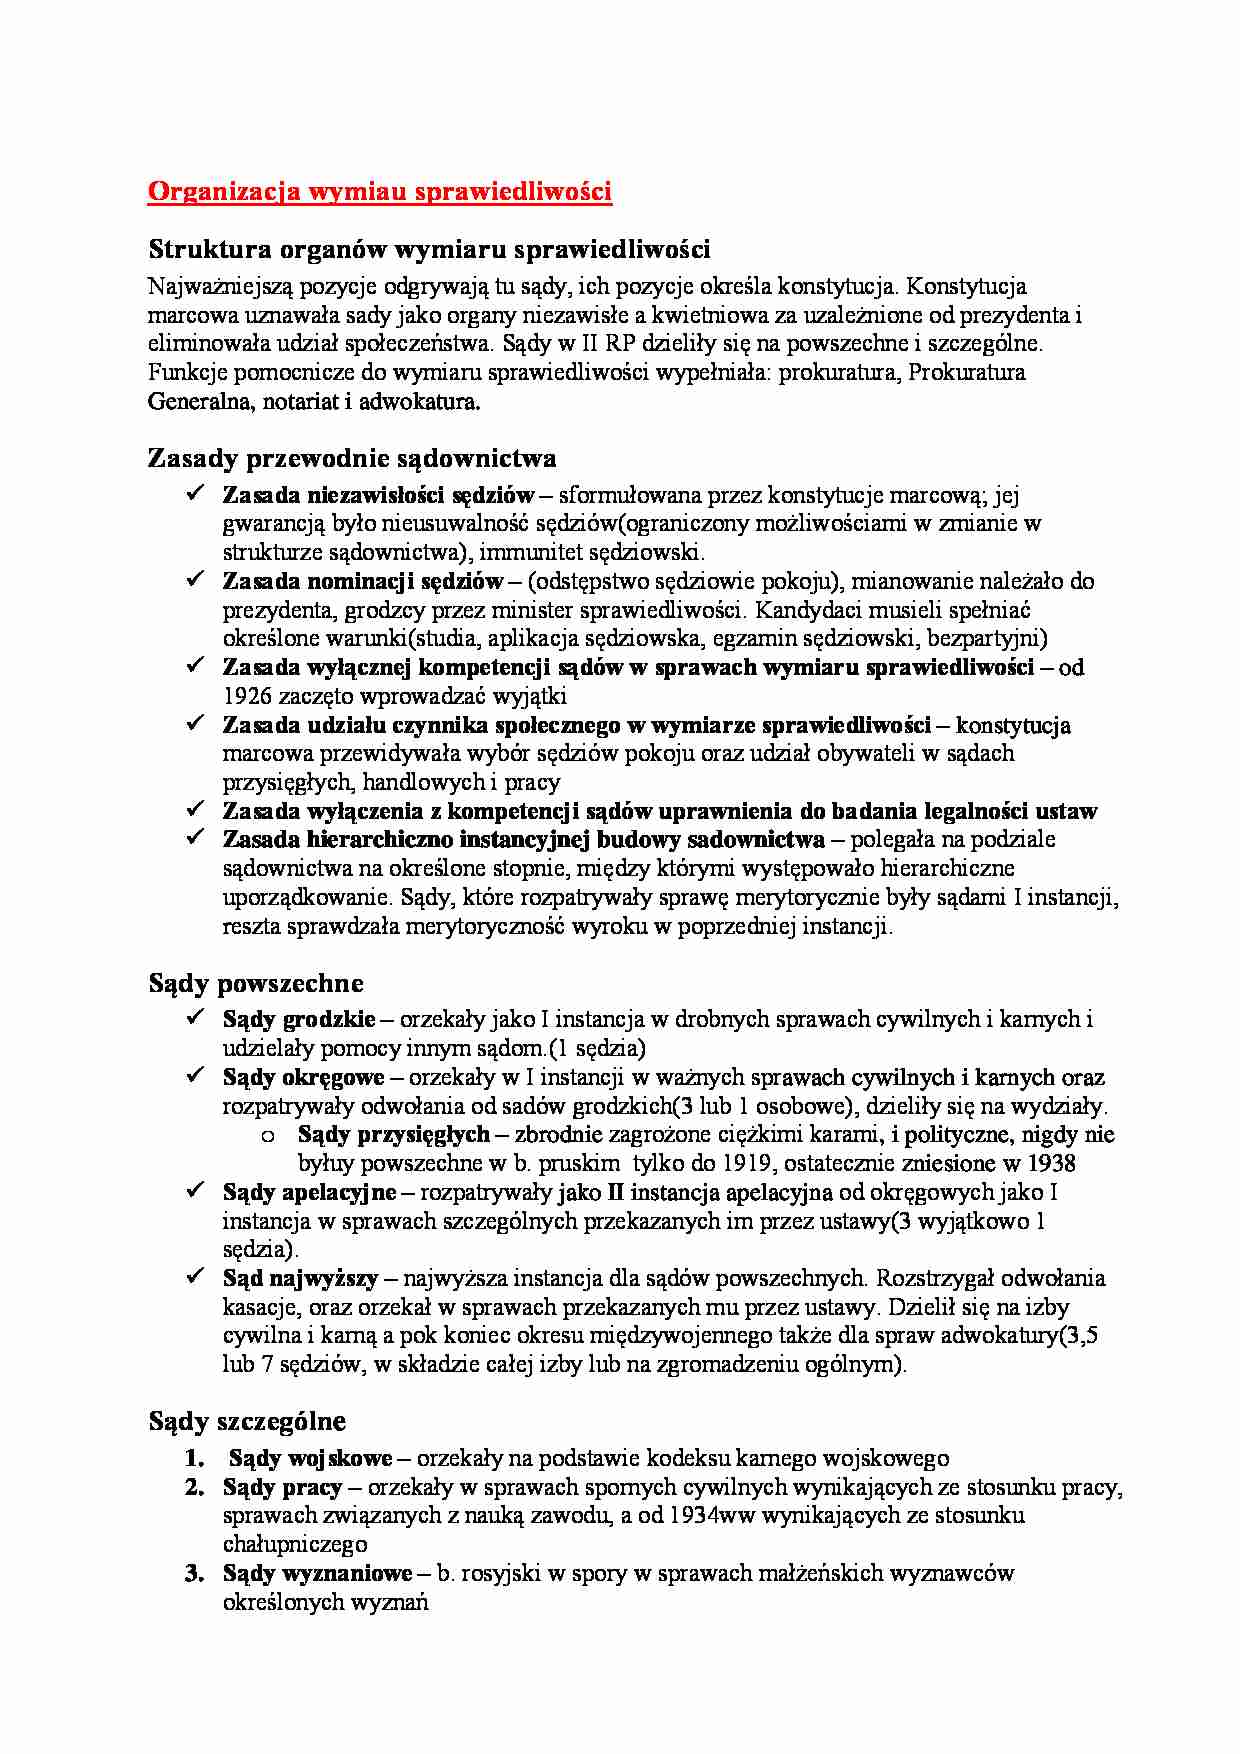 II Rzeczpospolita - Organizacja wymiaru sprawiedliwości - strona 1